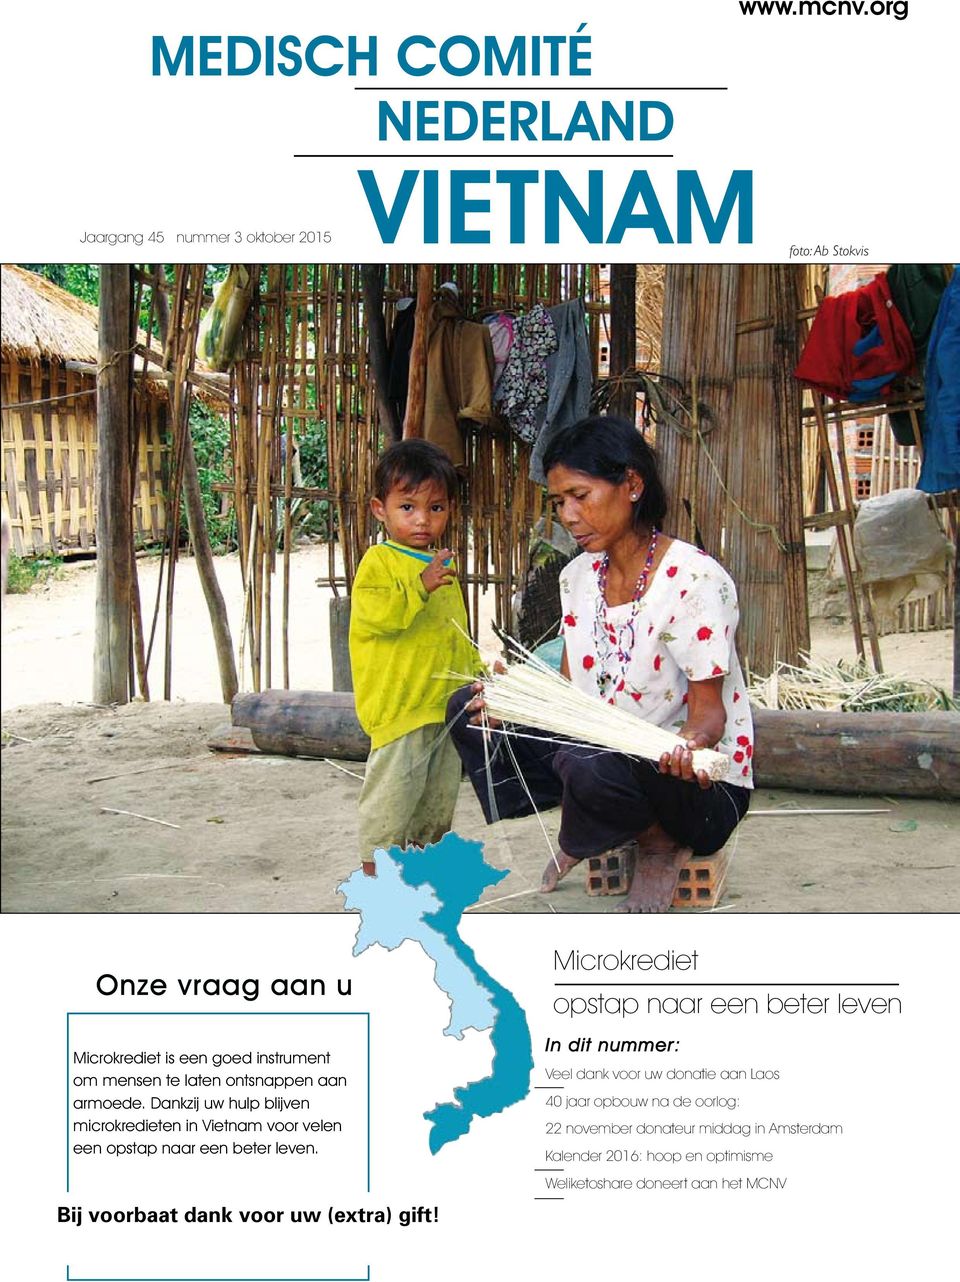 Dankzij uw hulp blijven microkredieten in Vietnam voor velen een opstap naar een beter leven. Bij voorbaat dank voor uw (extra) gift!